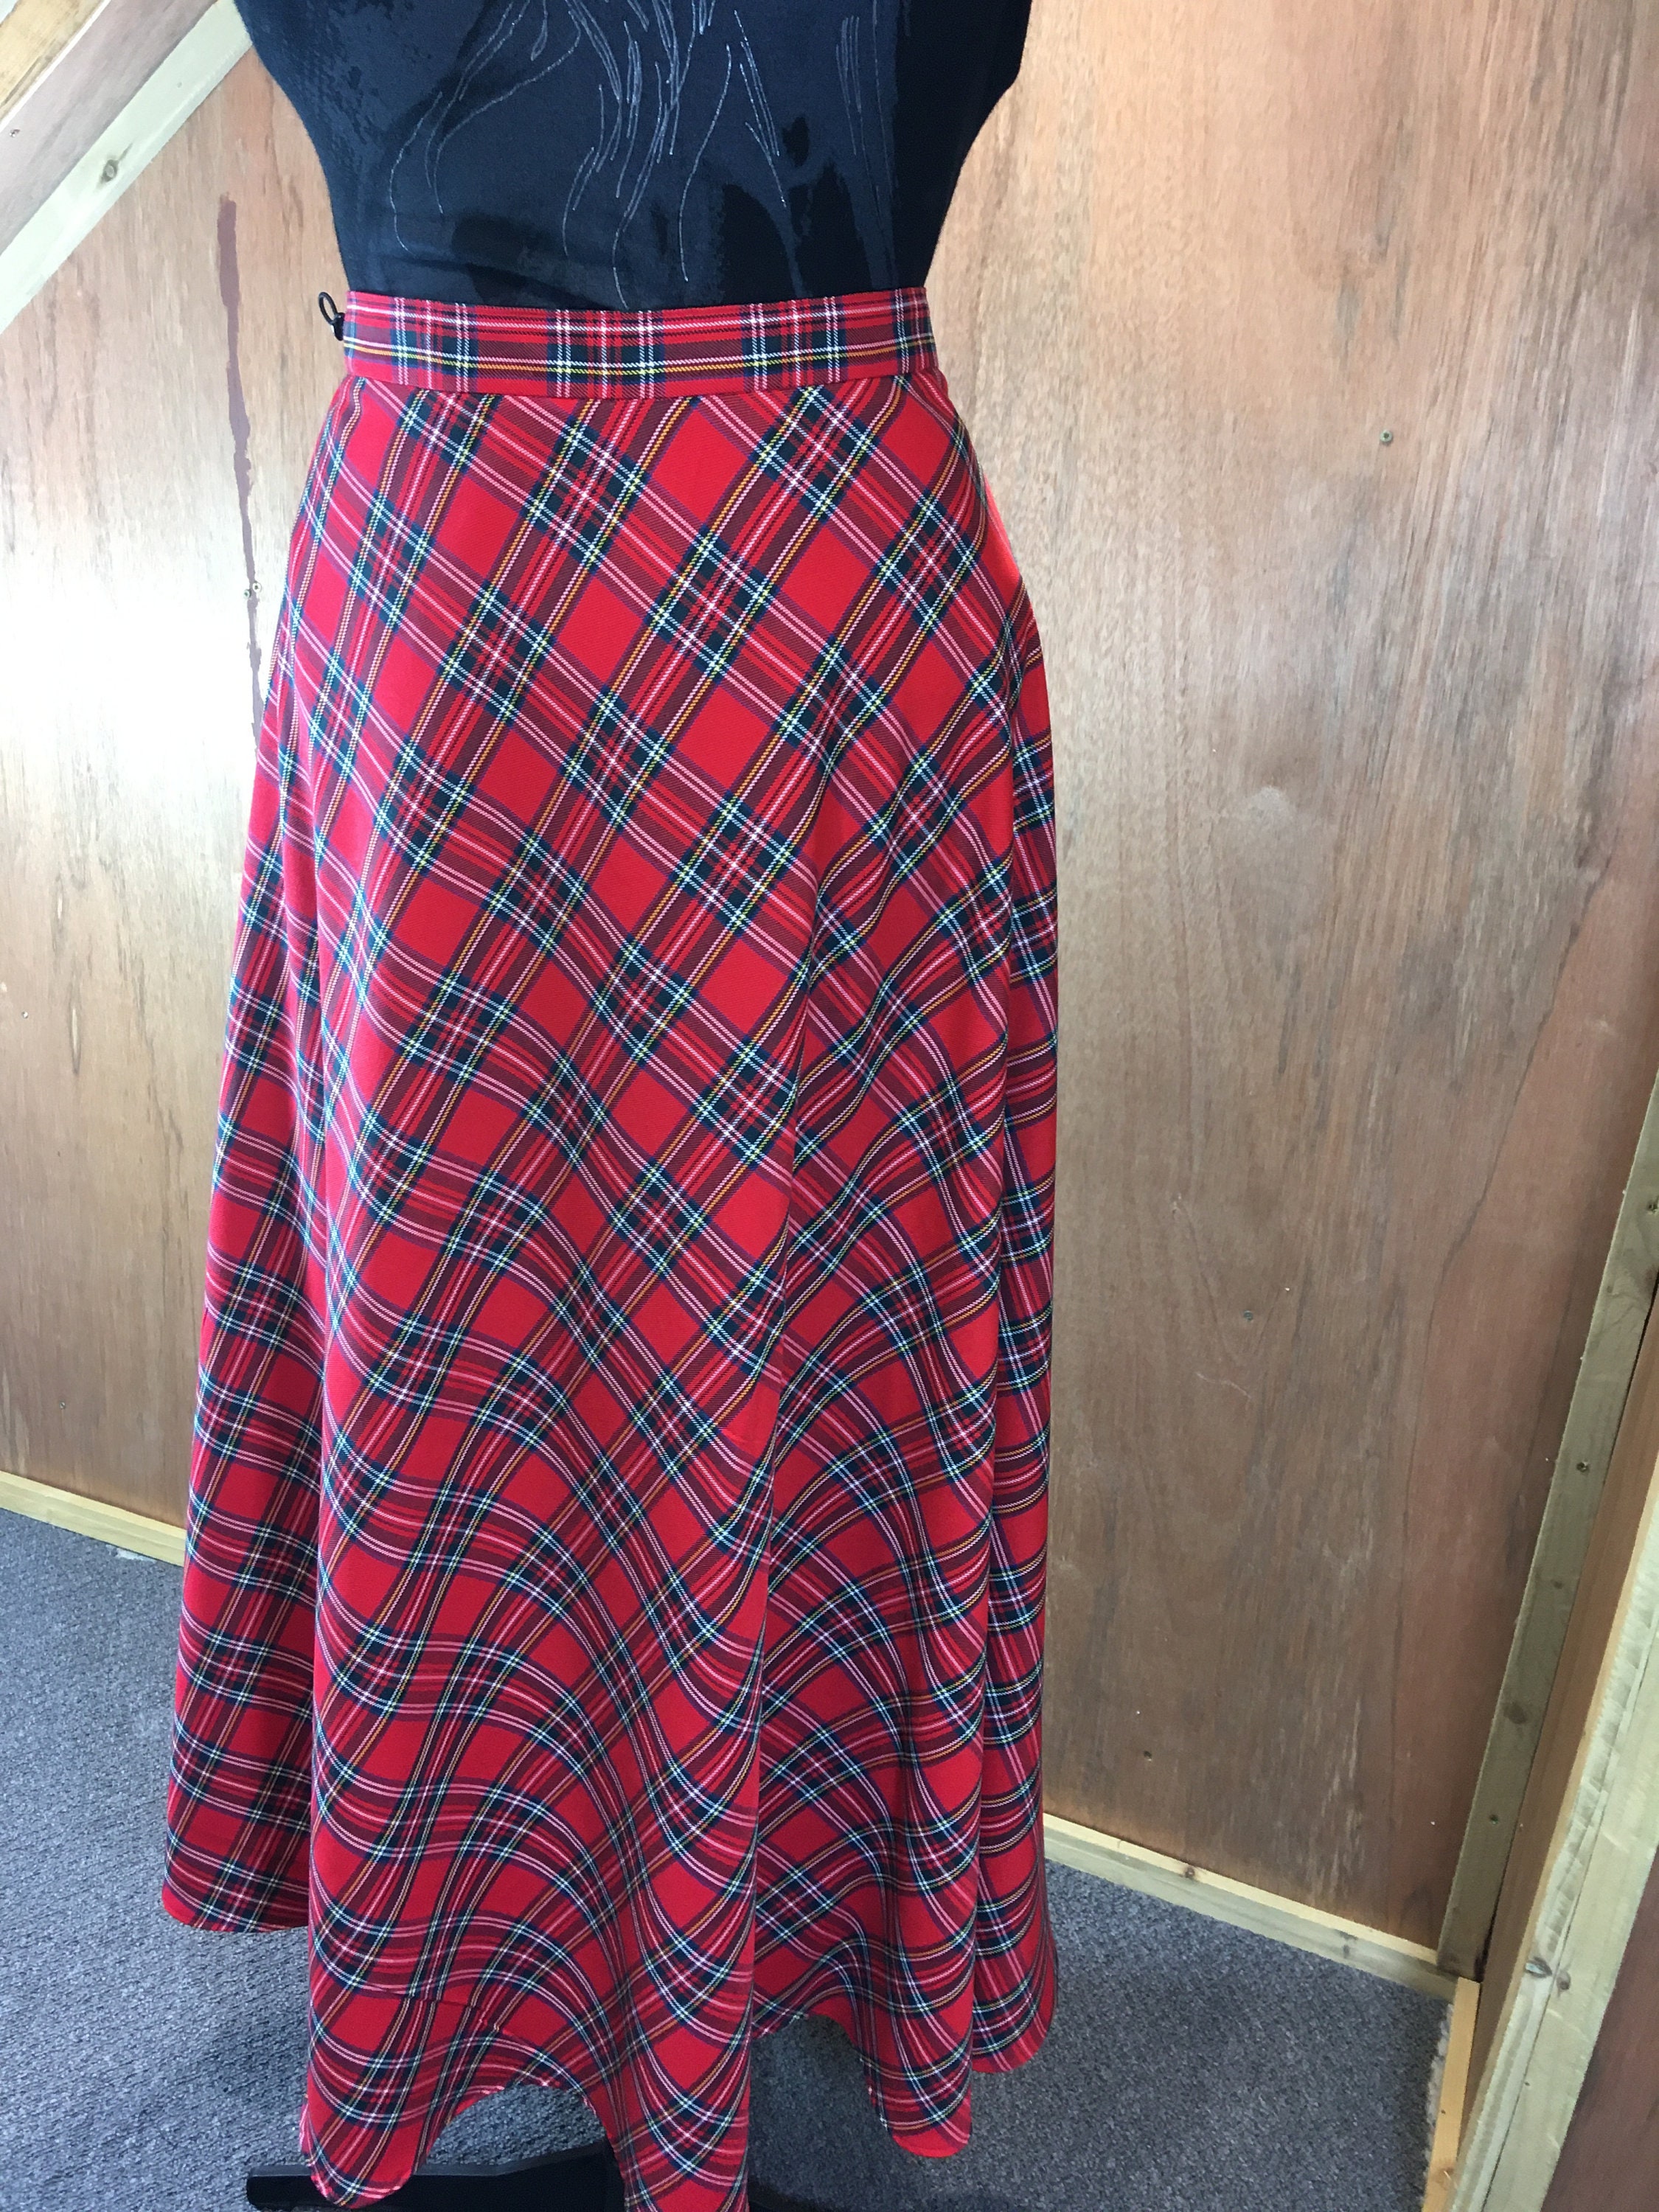 Made to Order Tartan Circle Skirt. Made to Measure. Adjustable | Etsy UK